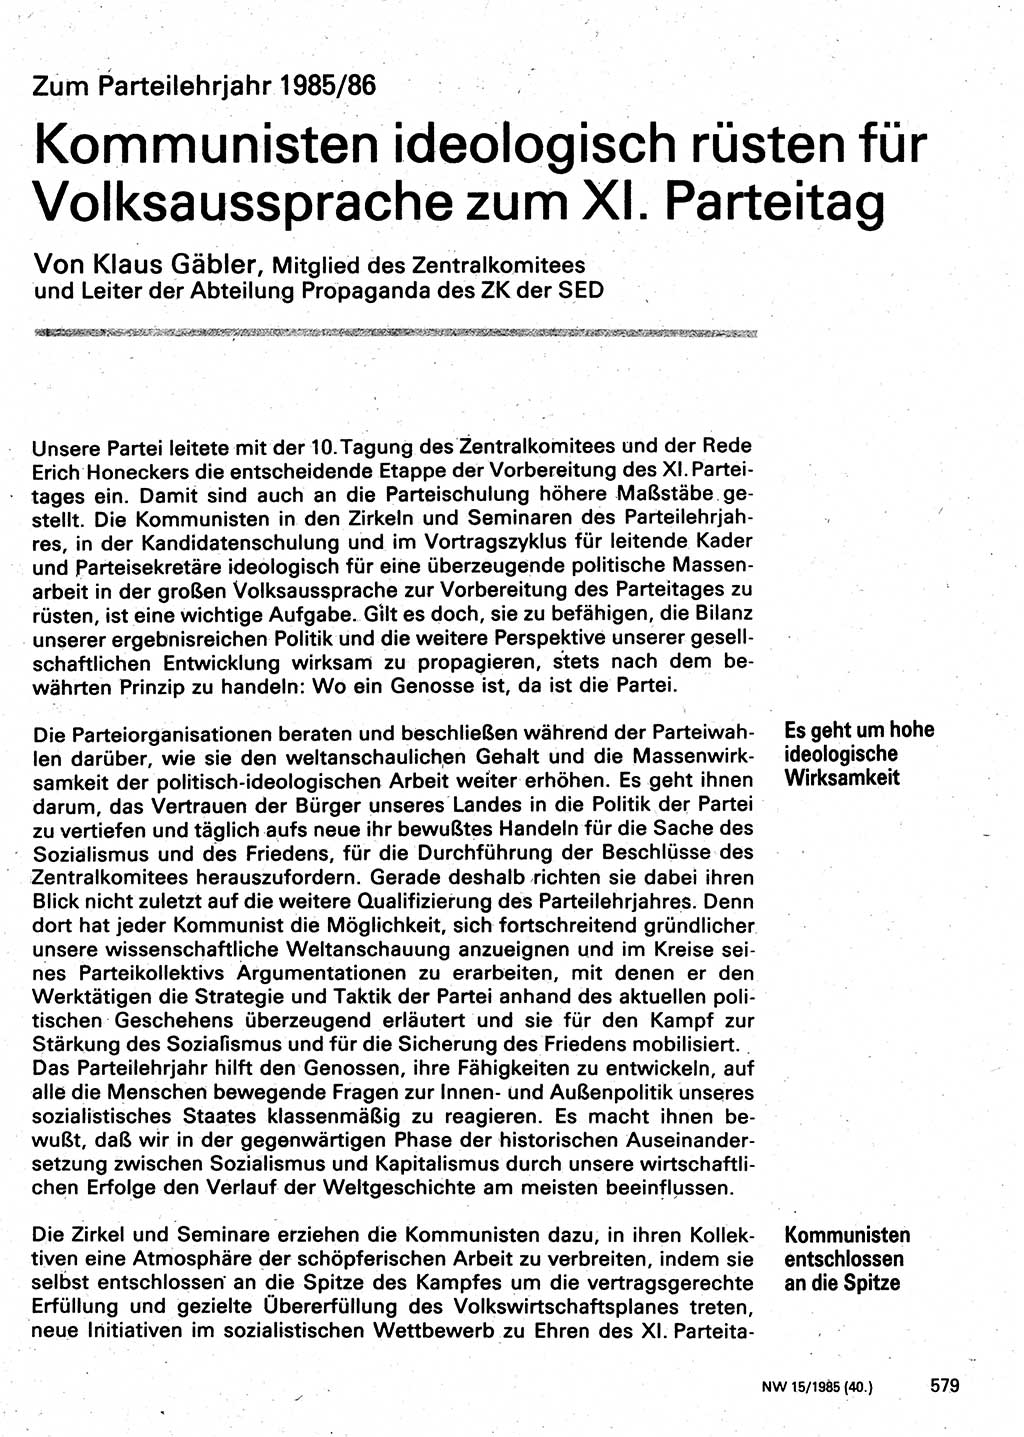 Neuer Weg (NW), Organ des Zentralkomitees (ZK) der SED (Sozialistische Einheitspartei Deutschlands) für Fragen des Parteilebens, 40. Jahrgang [Deutsche Demokratische Republik (DDR)] 1985, Seite 579 (NW ZK SED DDR 1985, S. 579)